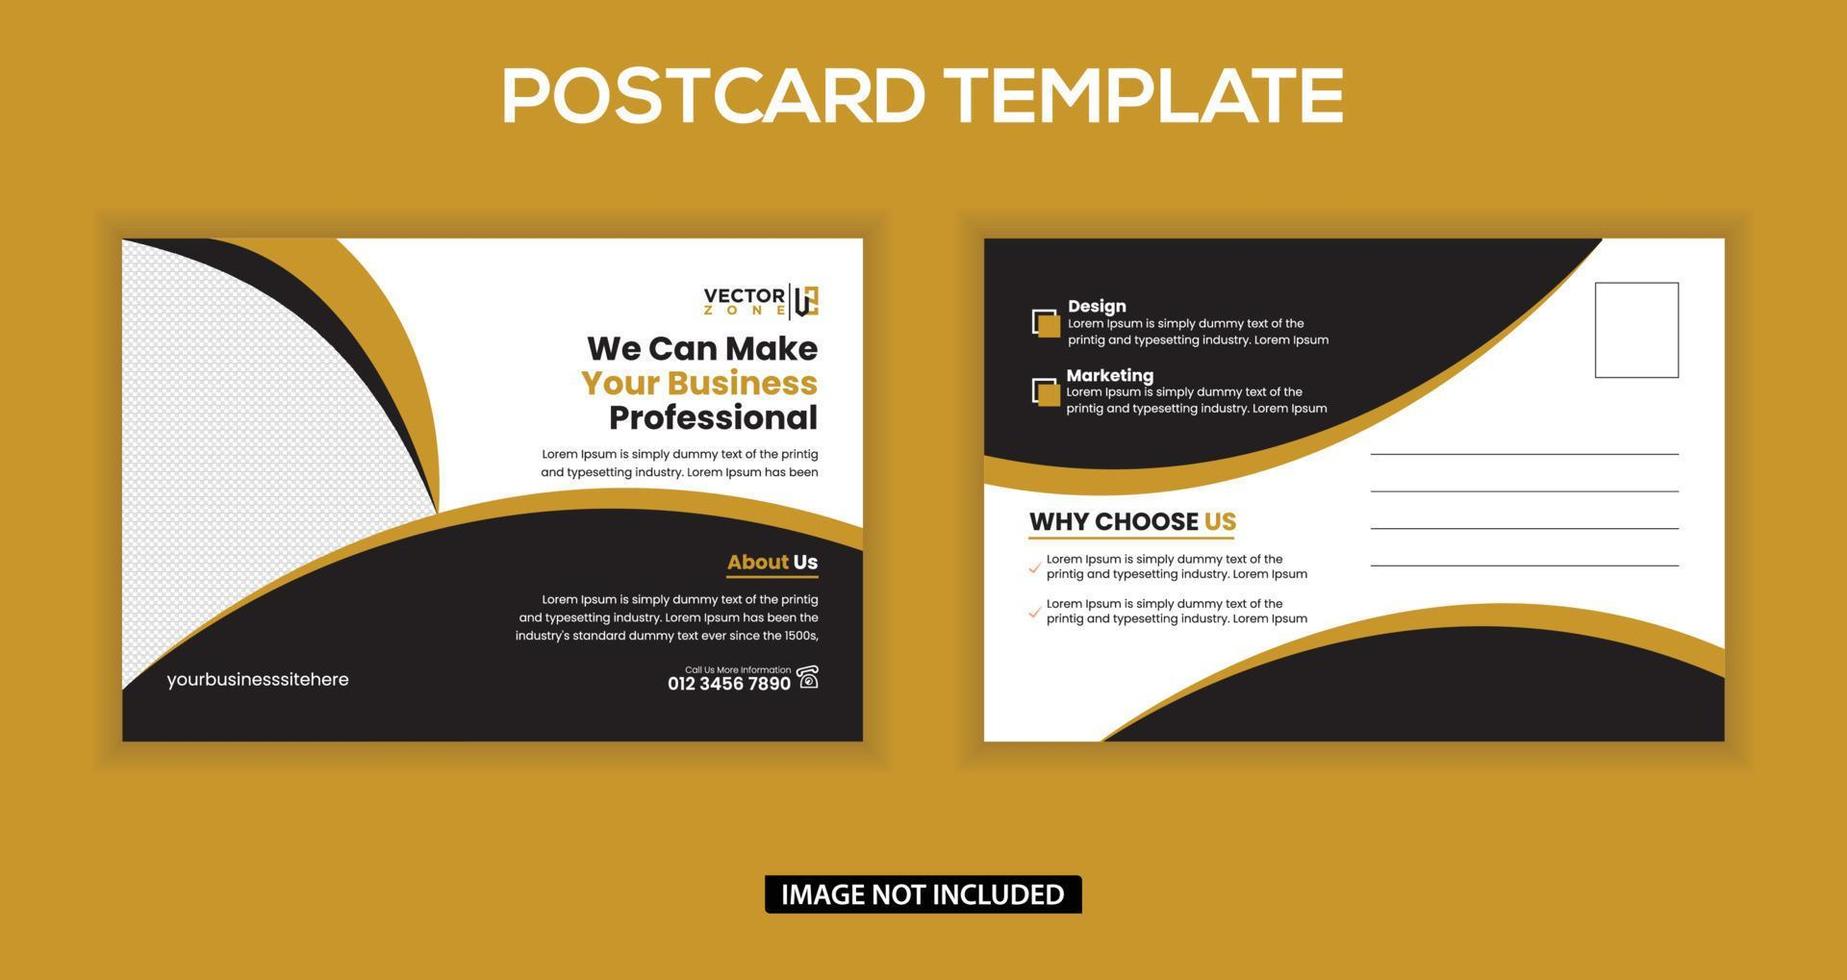 Corporate postcard template vector